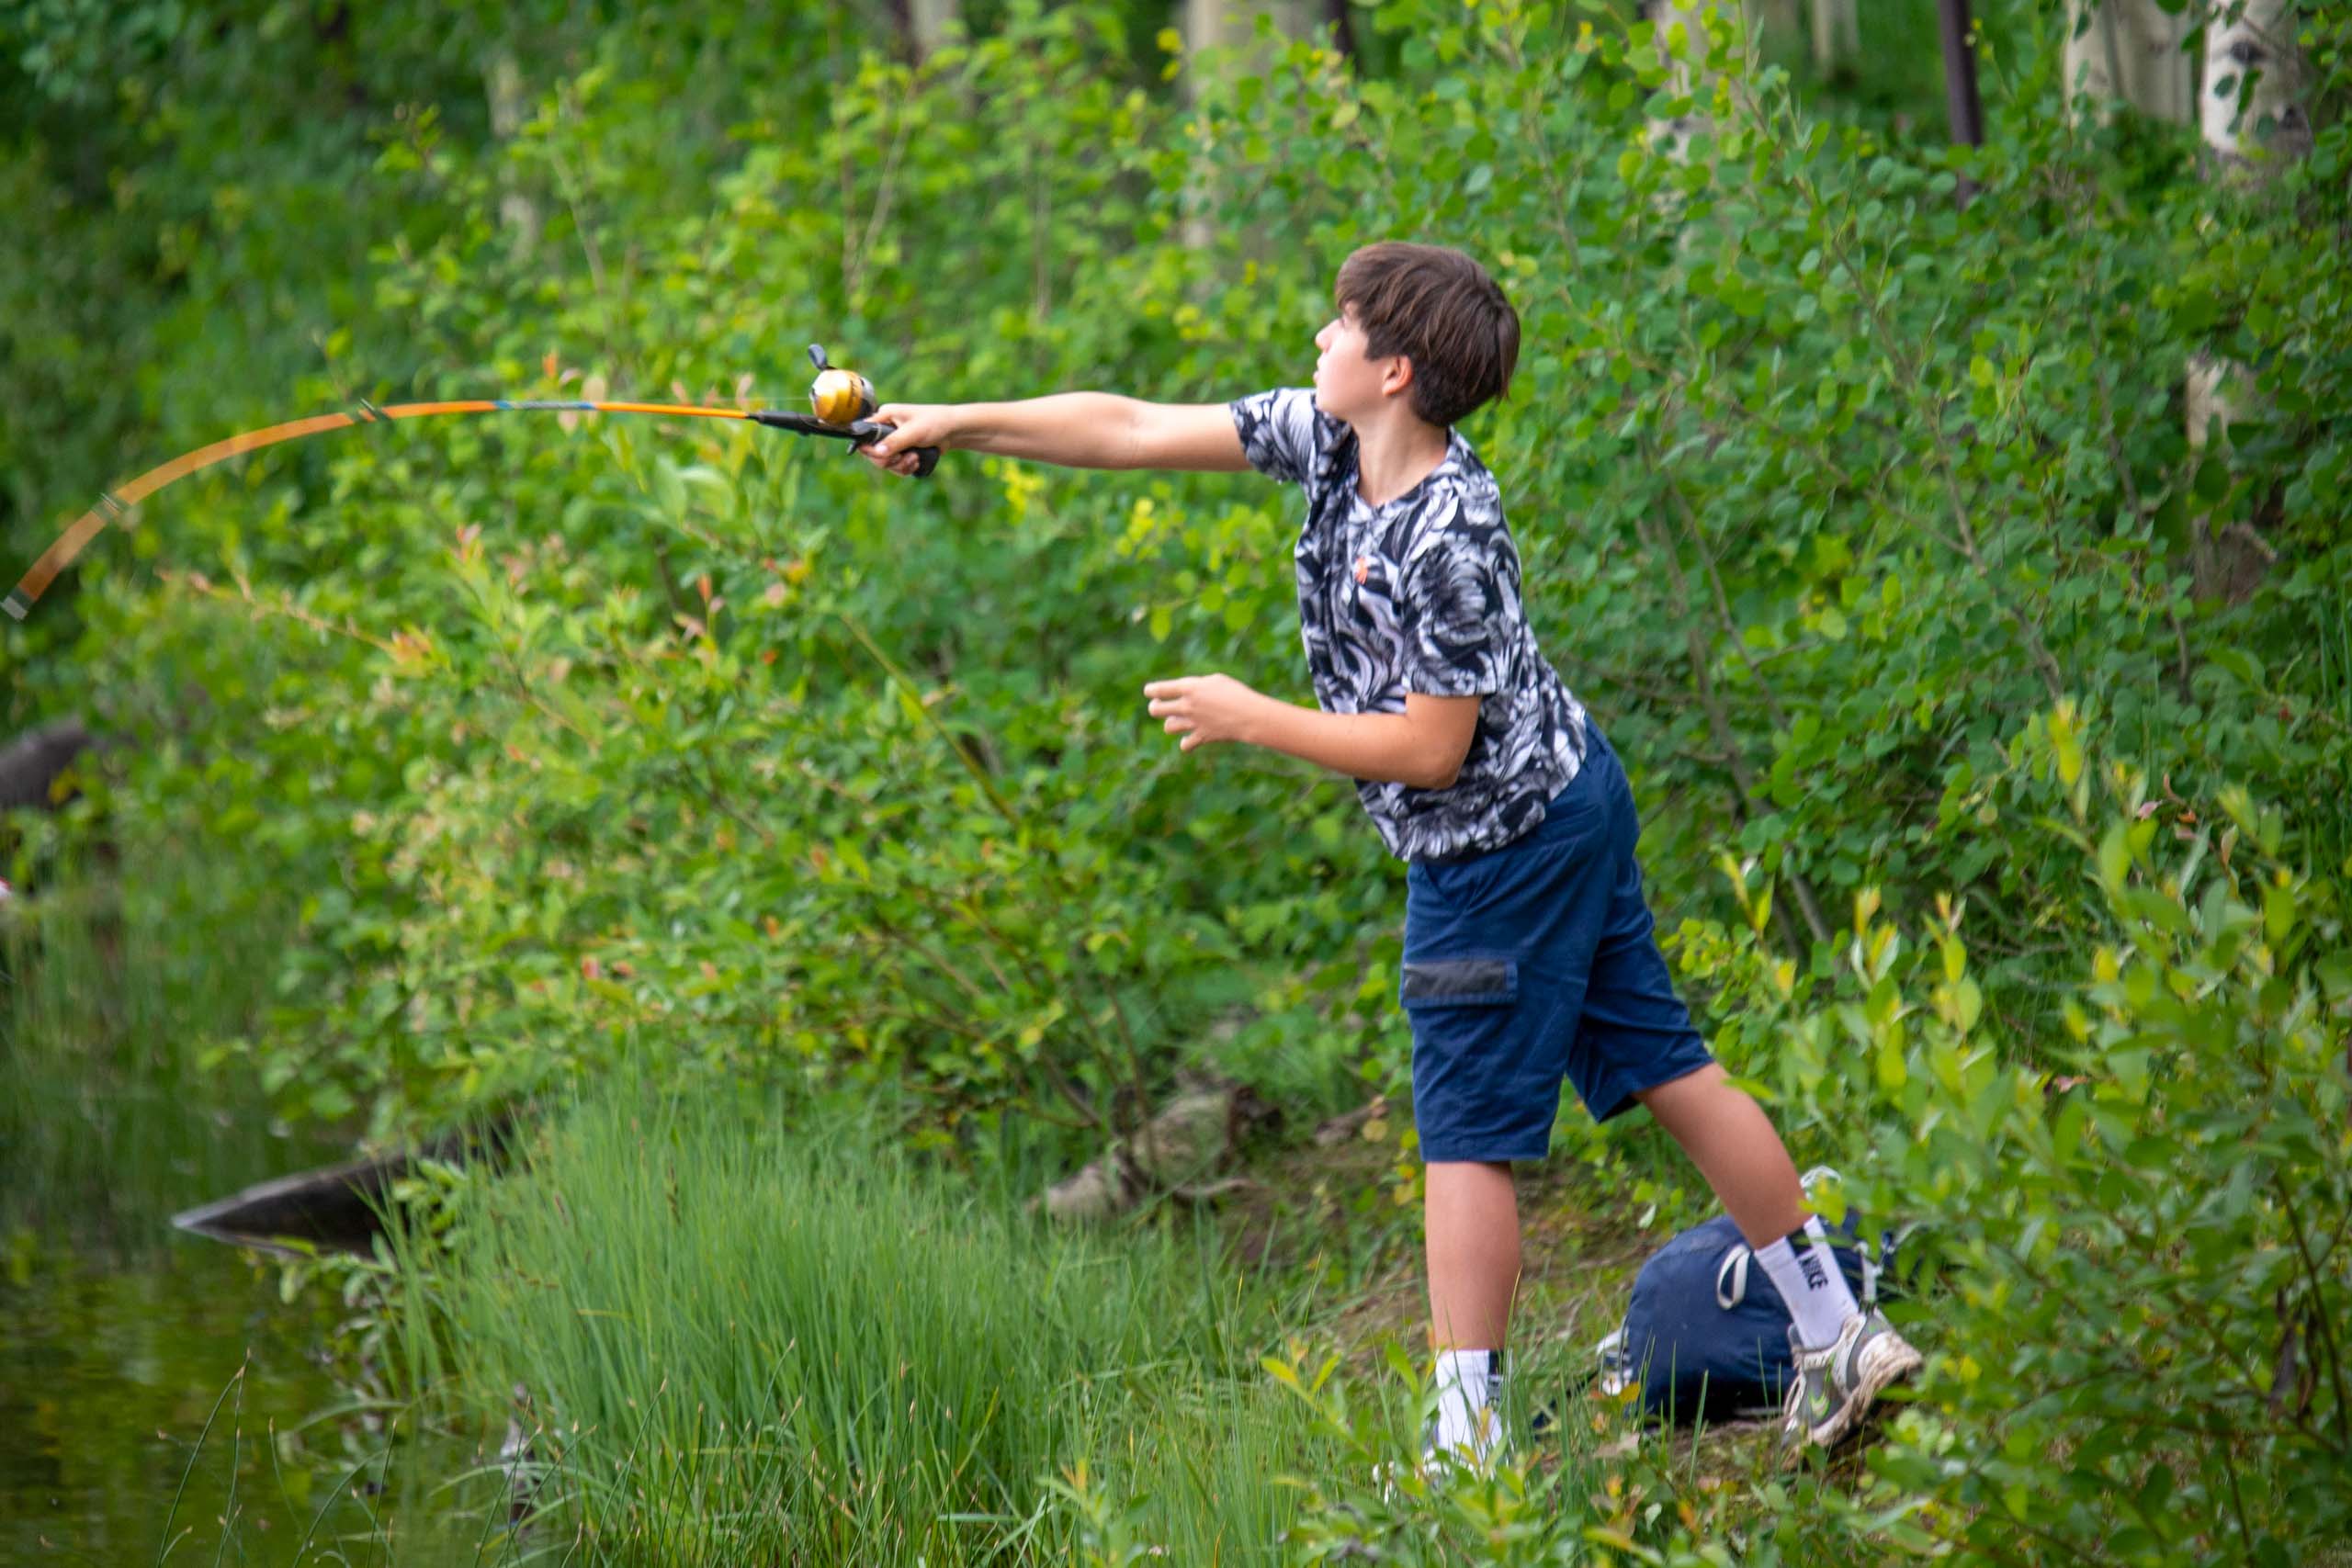 Boy fishing.